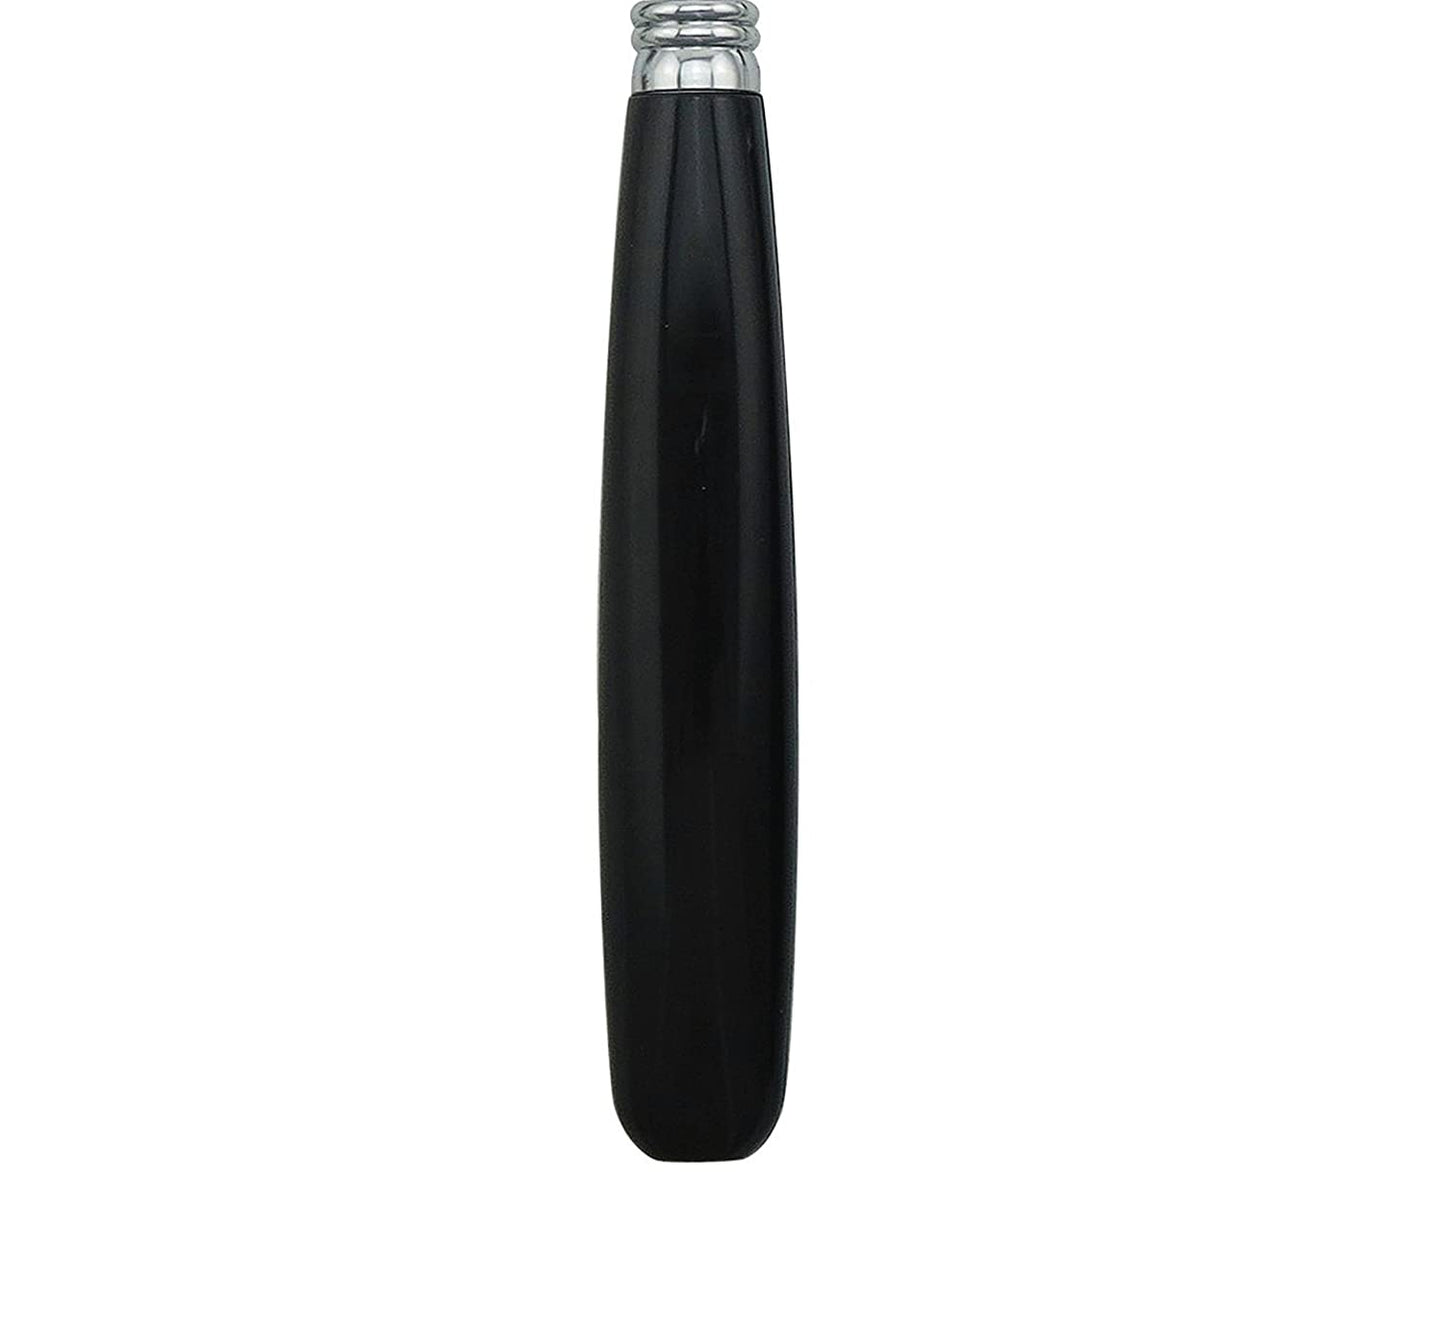 Bon Float 16-Piece Stainless Steel Cutlery Set - Black